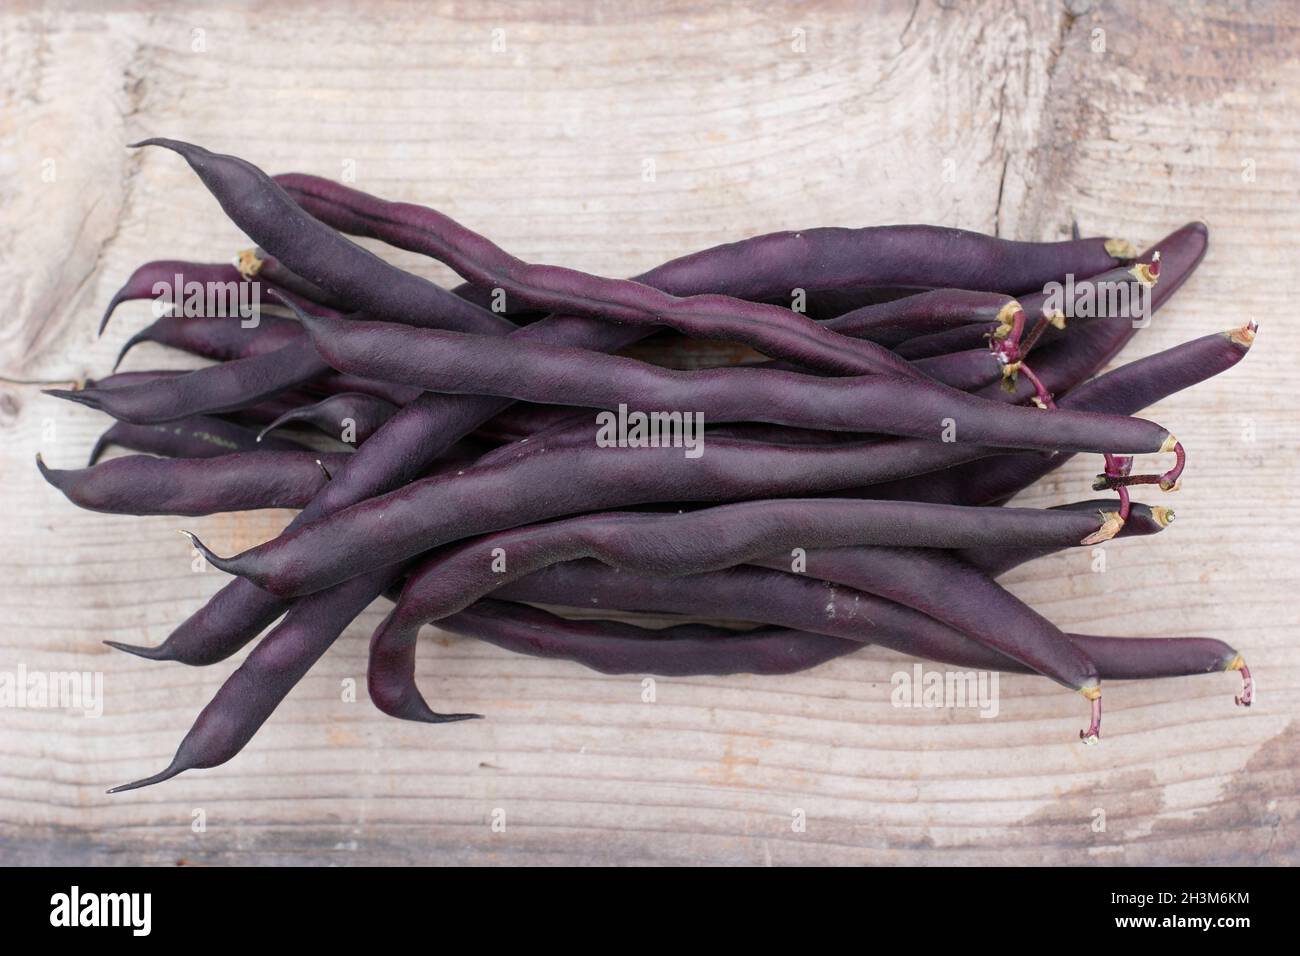 Phaseolus vulgaris.Haricots d'escalade violets fraîchement cueillis sur une table en bois.ROYAUME-UNI Banque D'Images